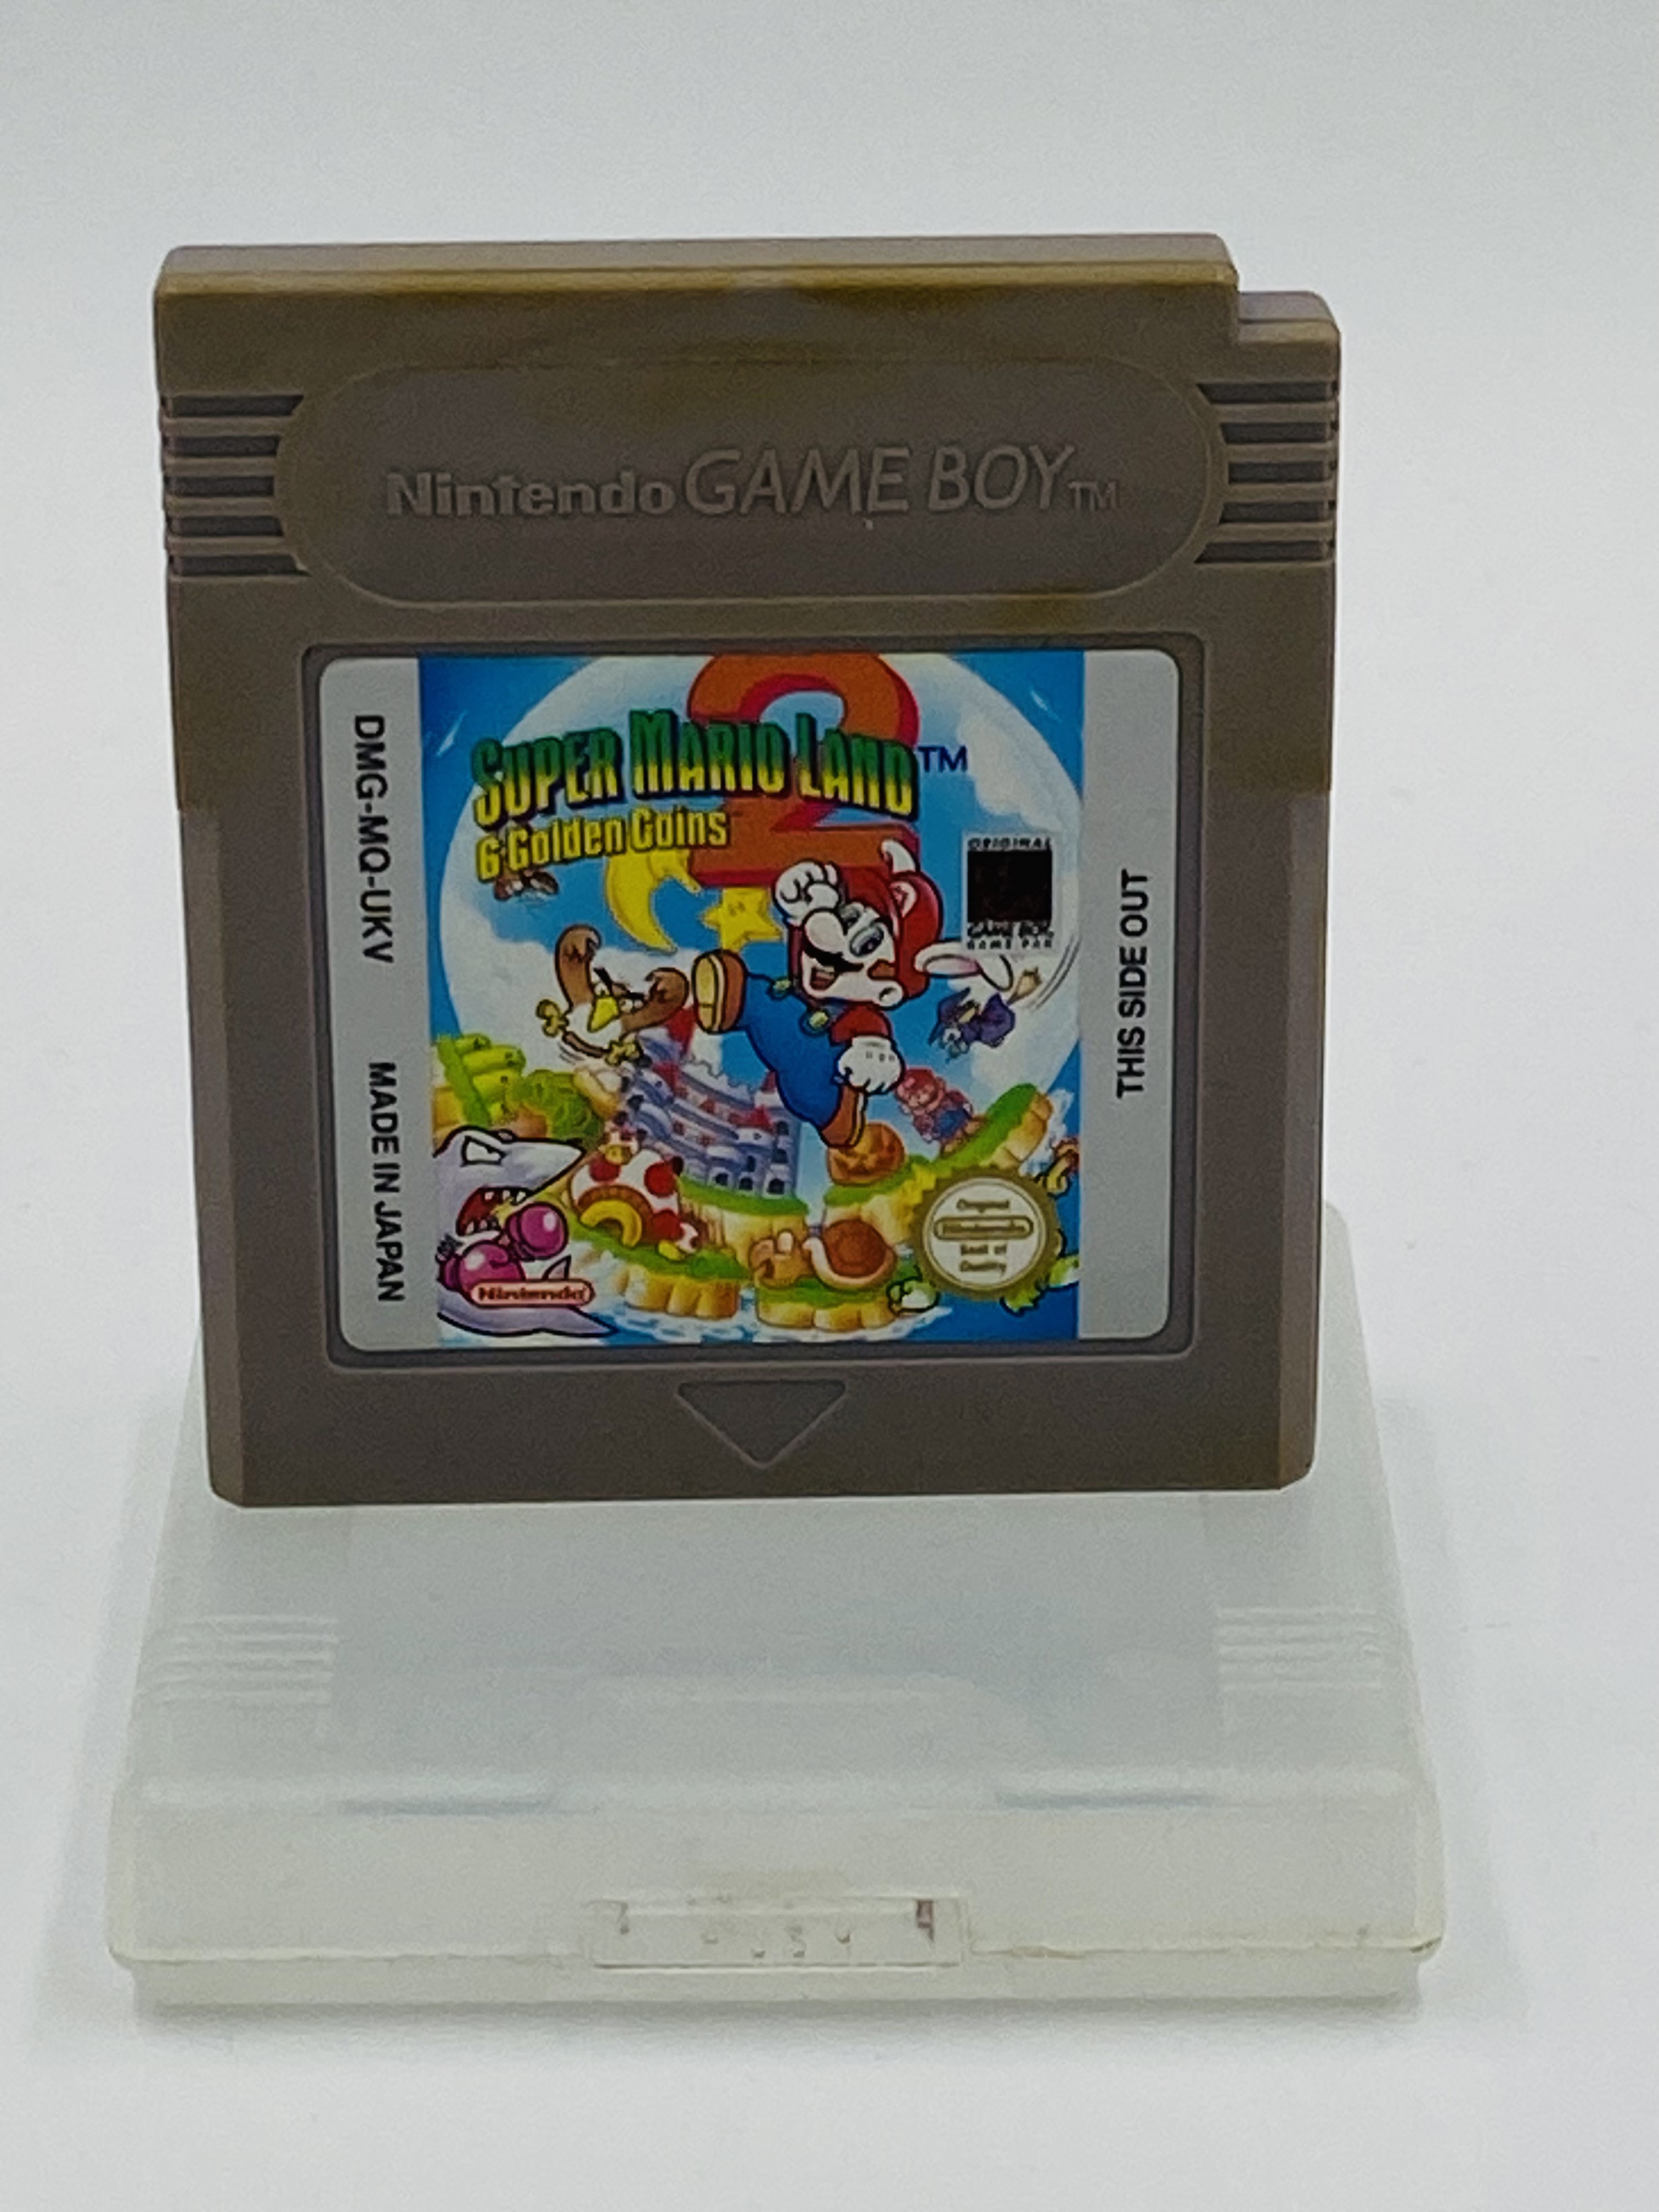 Nintendo Game Boy Super Mario Land 6 Golden Coins, boxed - Image 4 of 4